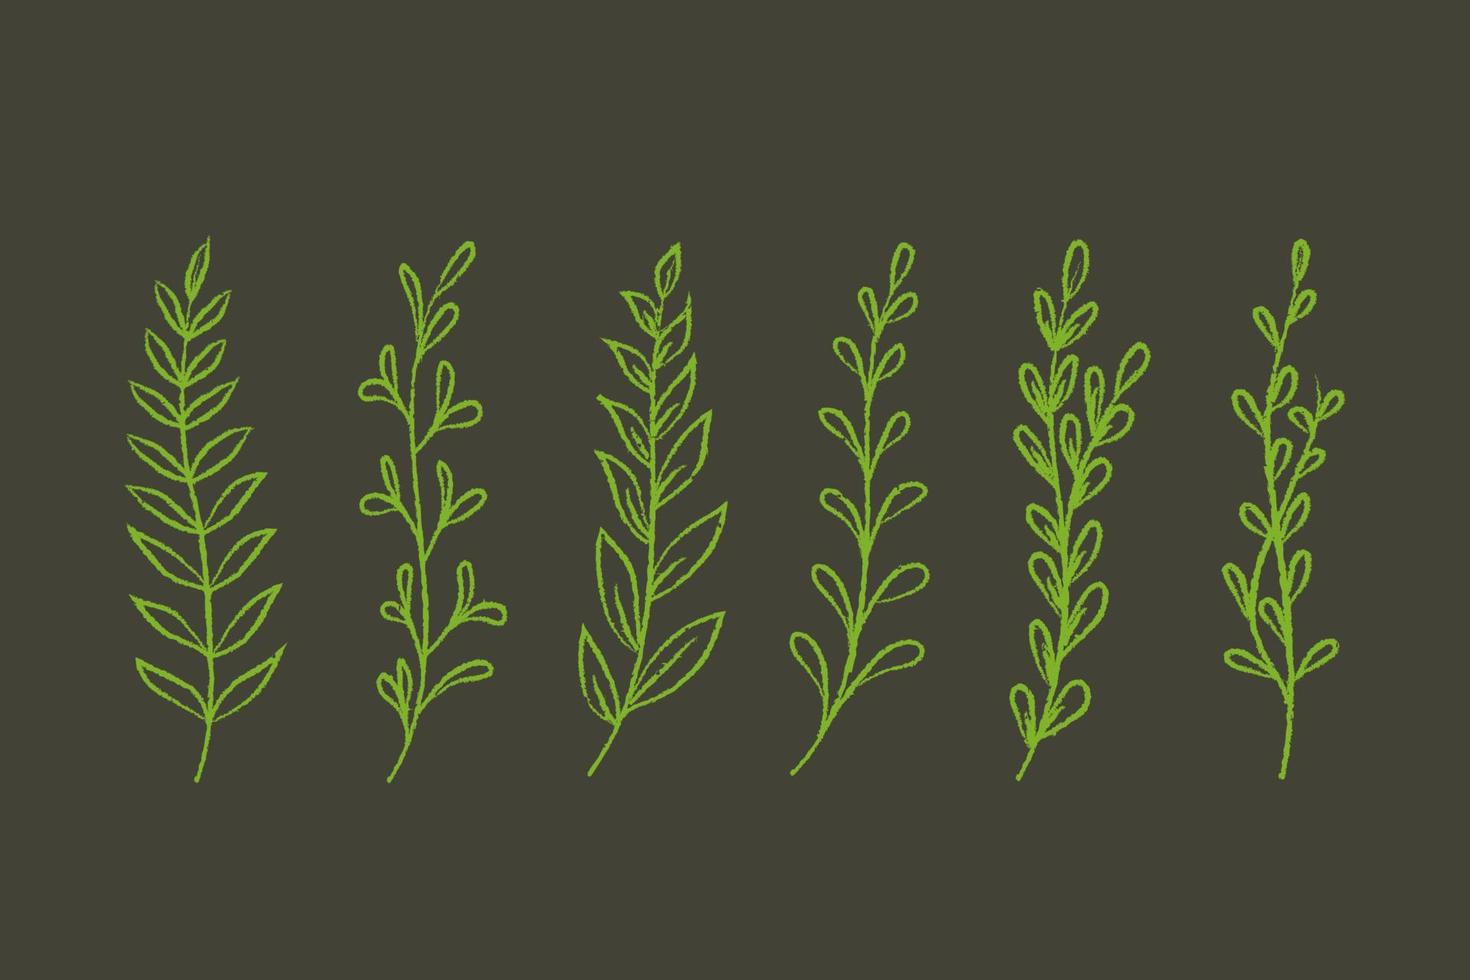 conjunto de plantas verdes dibujadas a mano con textura de lápiz. vector